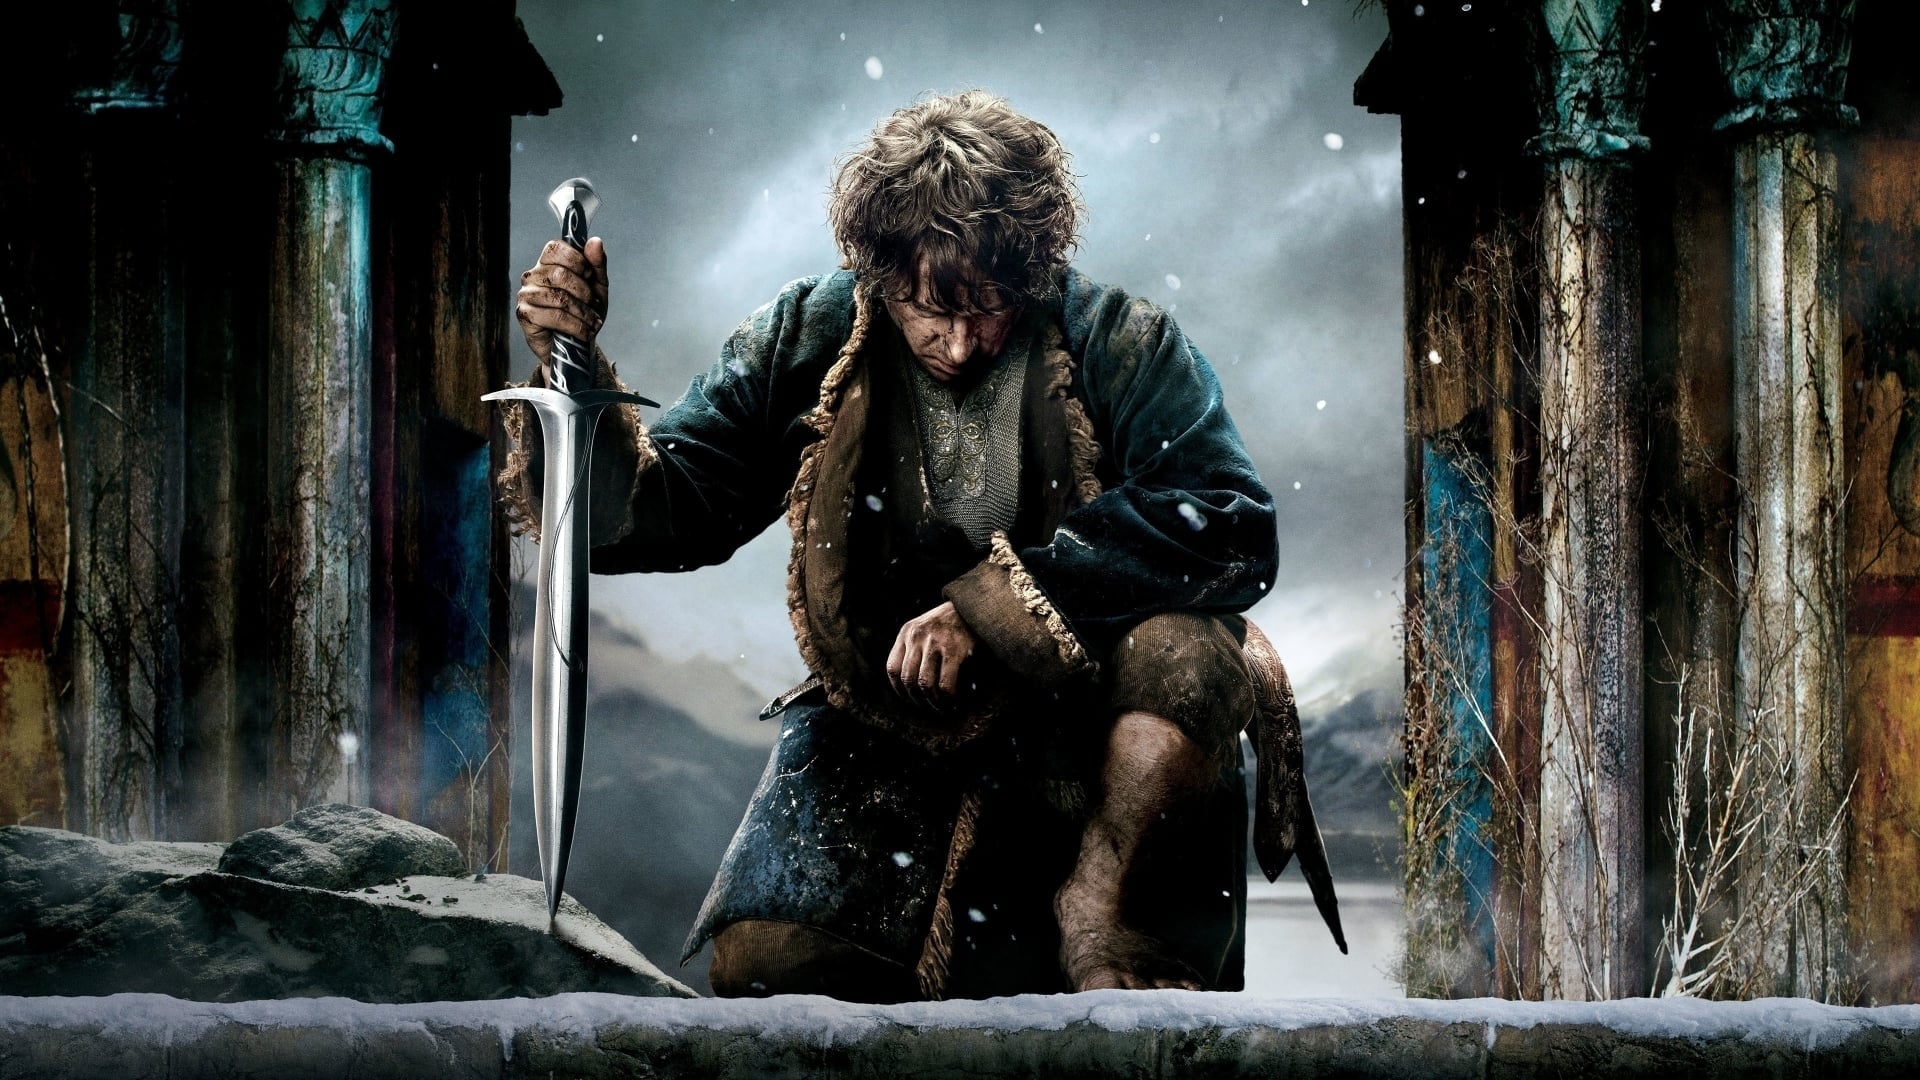 Imagens do O Hobbit: A Batalha dos Cinco Exércitos Dublado Dublado Online